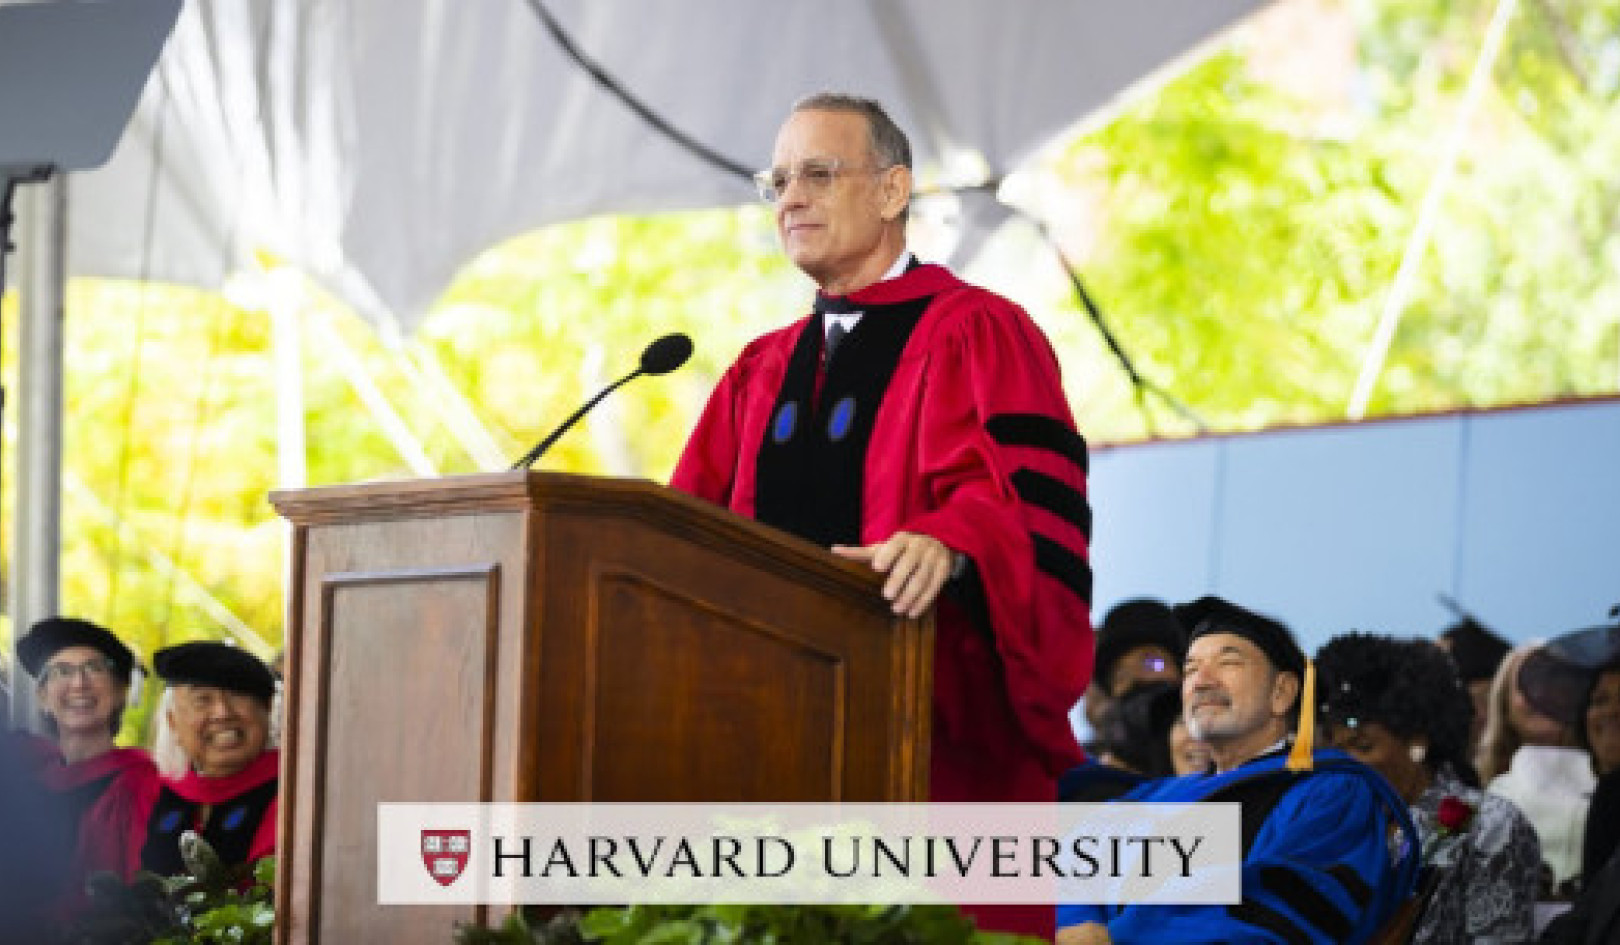 톰 행크스, 하버드 졸업생들이 진실, 정의, 미국식 방식을 받아들이도록 영감을 주다